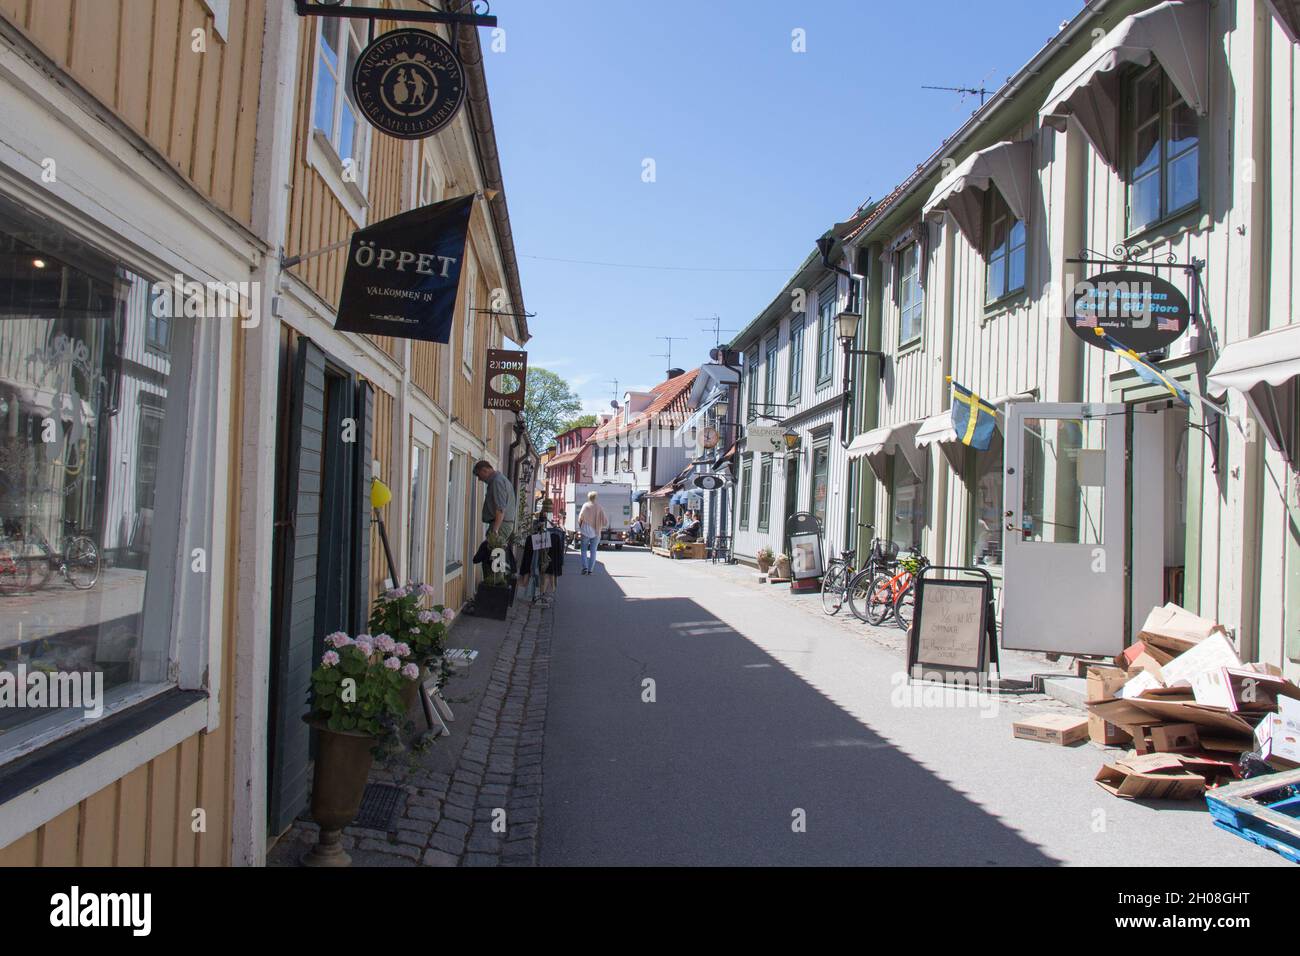 Svezia, Sigtuna - Maggio 31 2019: La vista di un gatan Stora in una giornata di sole, la vecchia strada principale il 31 2019 maggio a Sigtuna, Svezia. Foto Stock